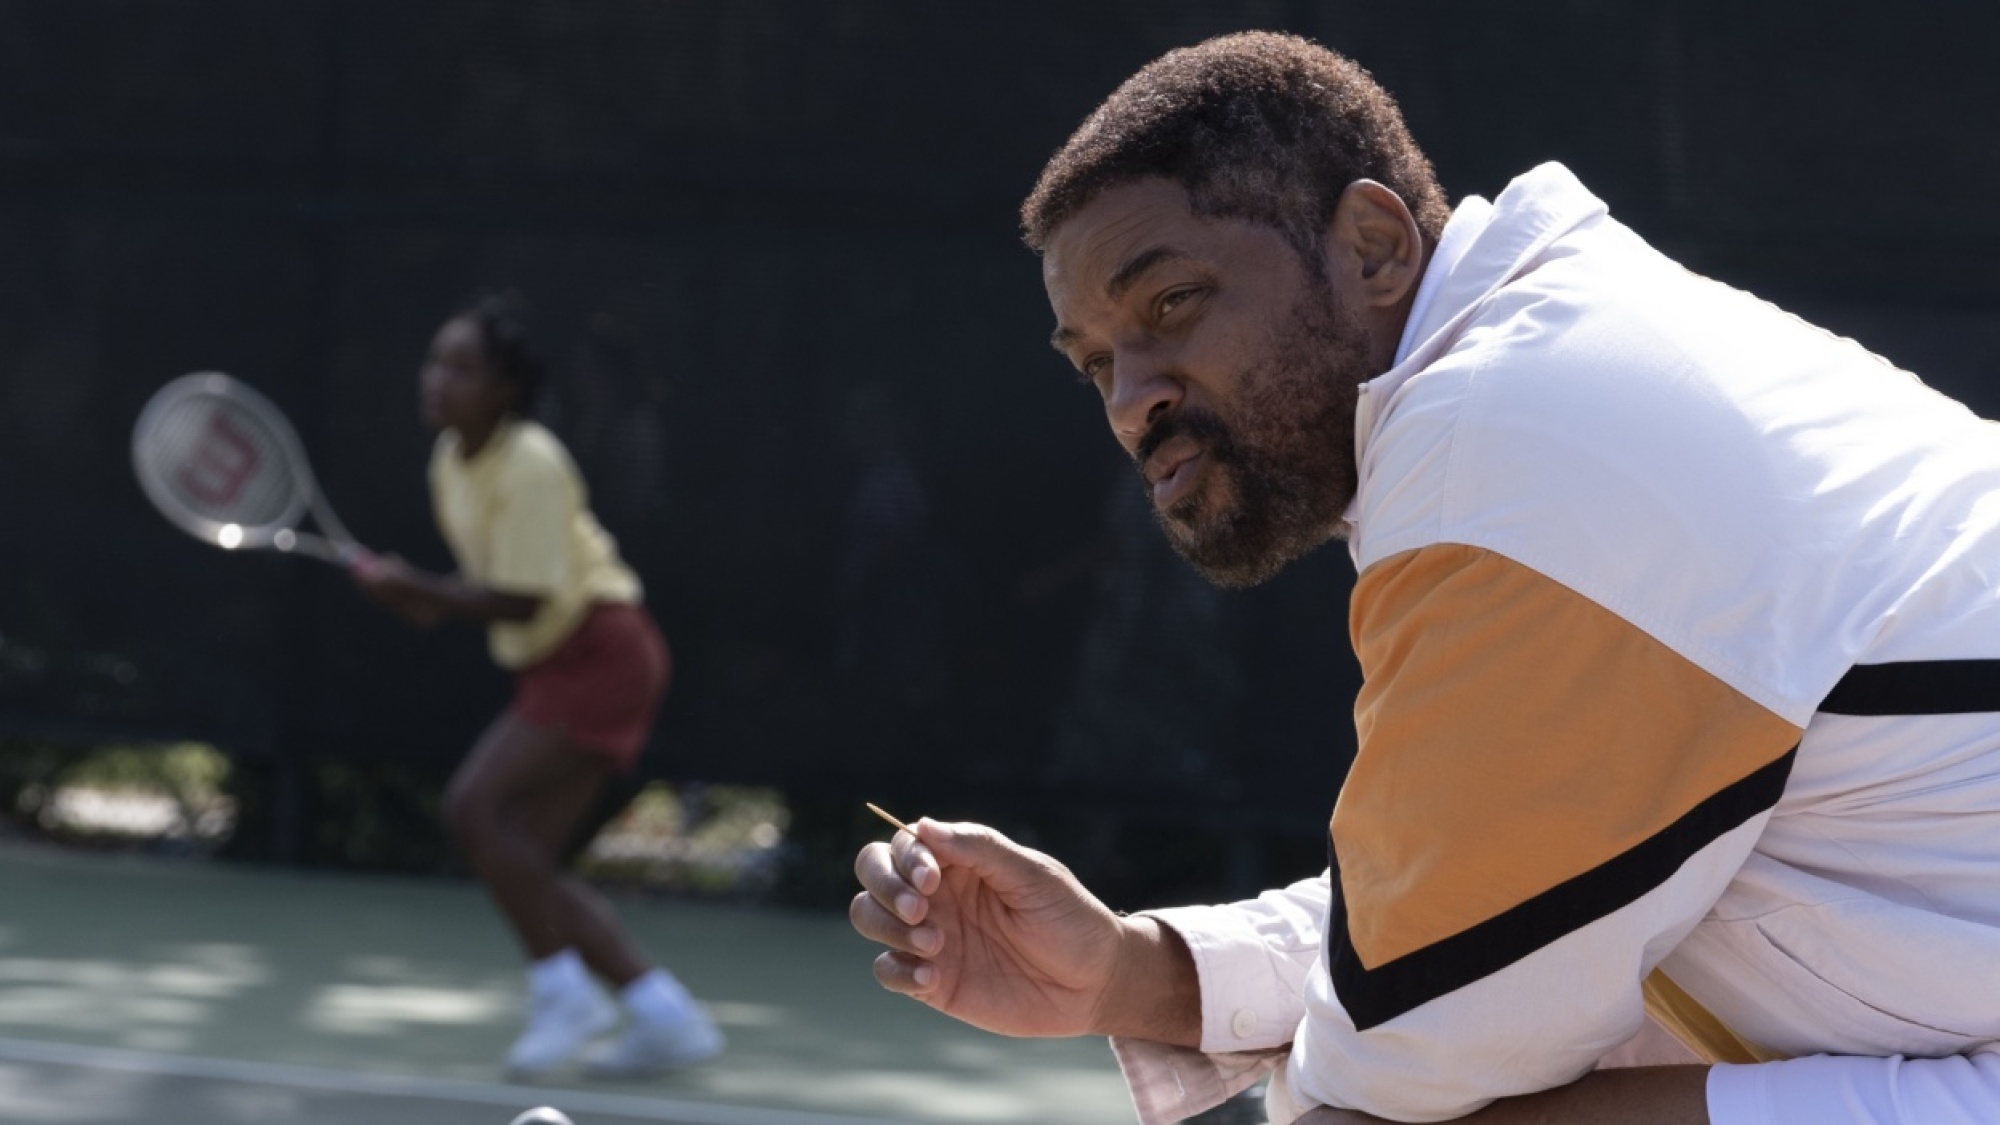 Un homme est assis en marge d'un court de tennis tandis qu'une jeune fille s'entraîne à l'arrière.